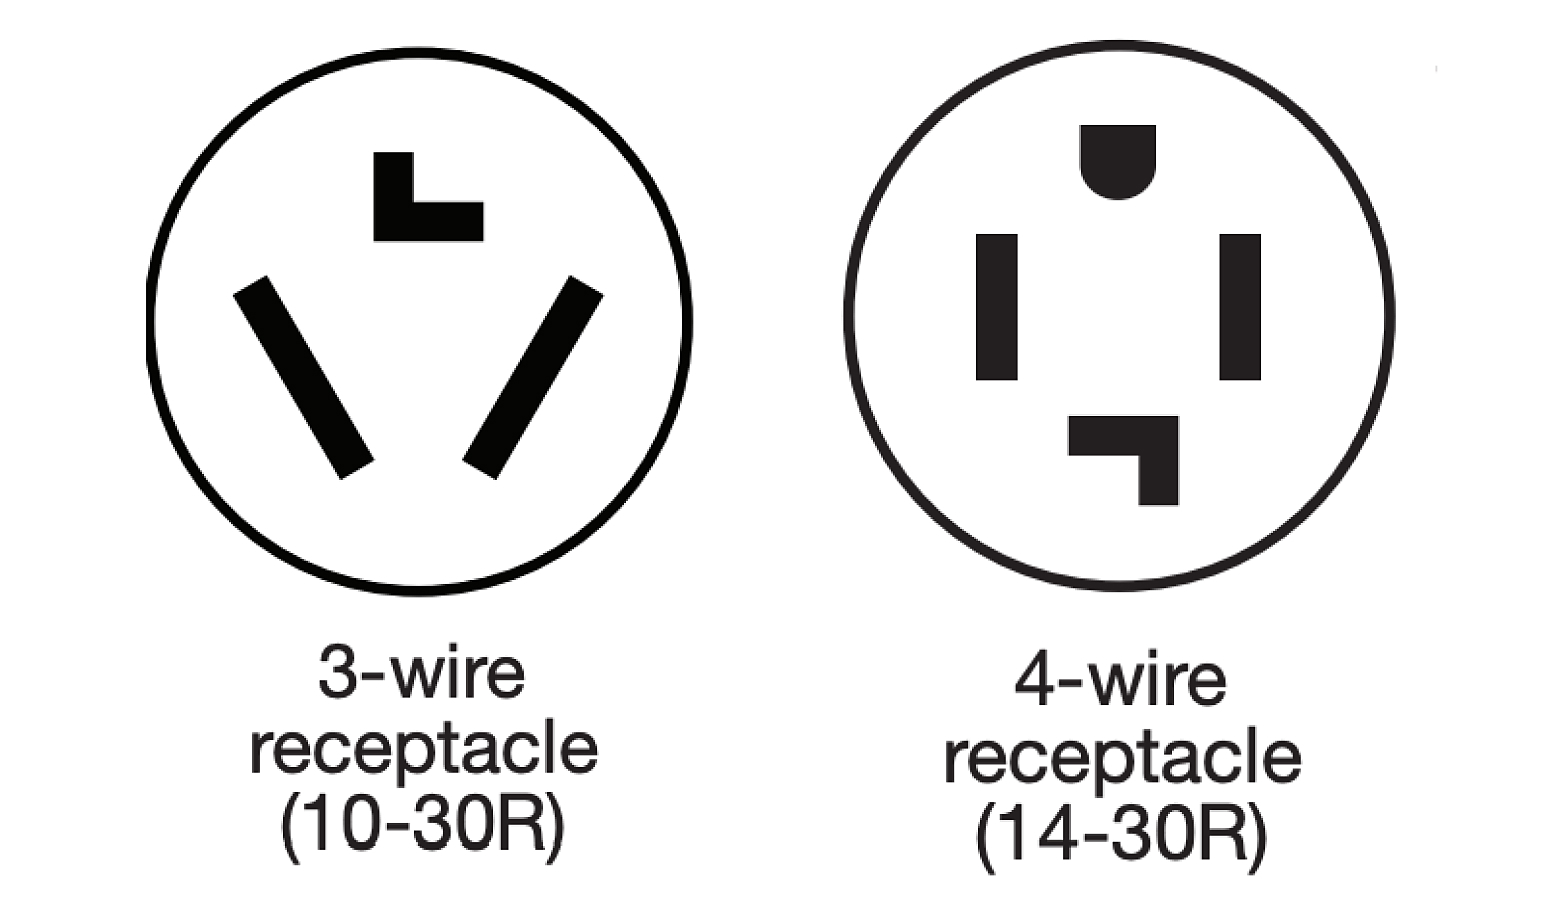 图示一个3线插座和一个4线插座。